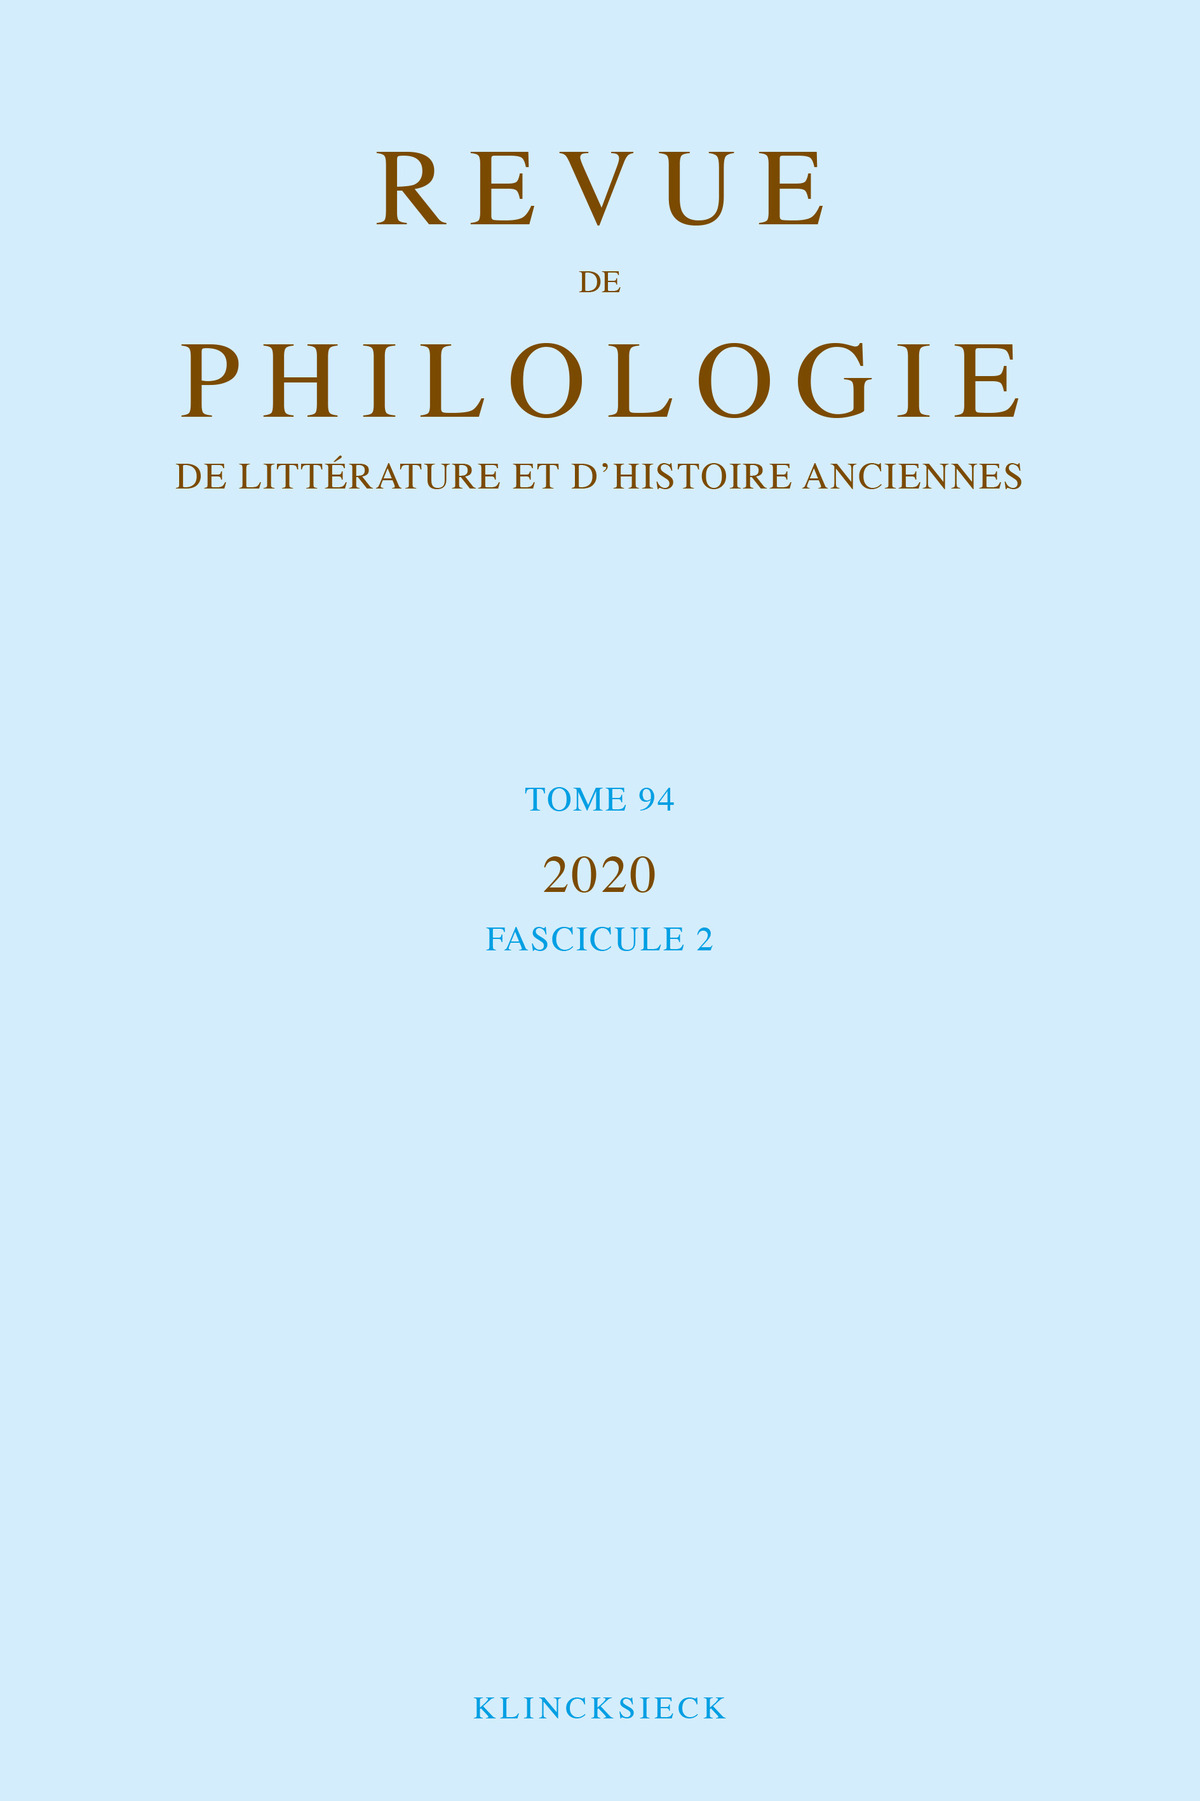 Revue de philologie, de littérature et d'histoire anciennes volume 94-2